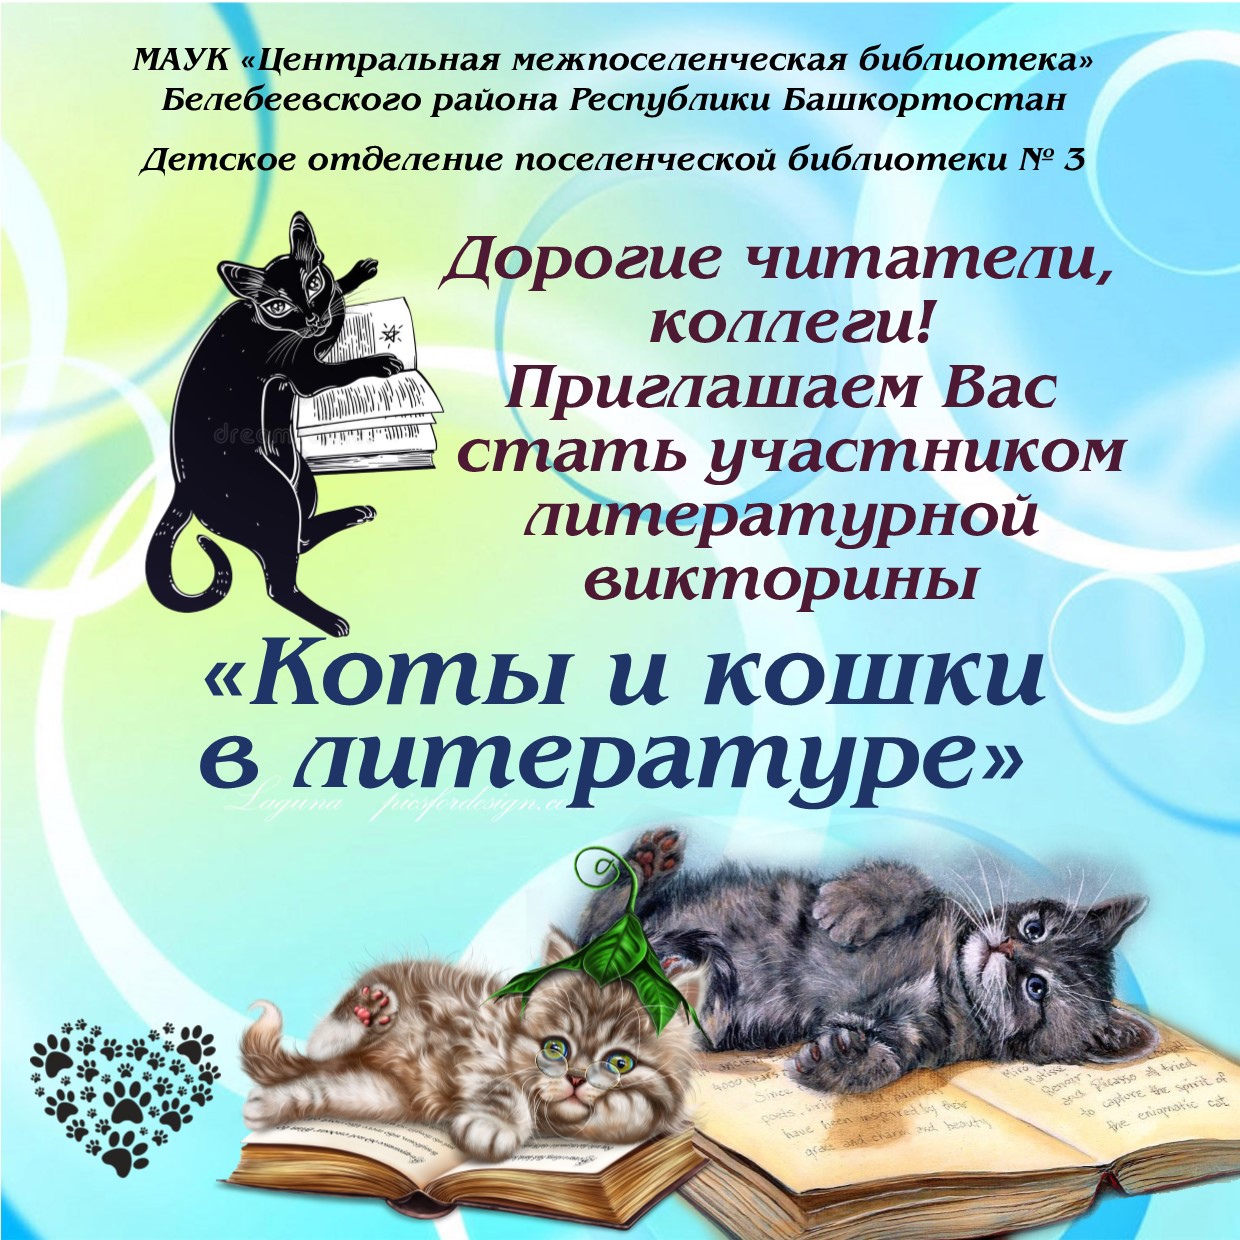 Отзыв день кошек. Международный день кошек в библиотеке. День кошек в библиотеке мероприятия. Мероприятия к Дню кошек в библиотеке для детей. Всемирный день кошек мероприятия в библиотеке.